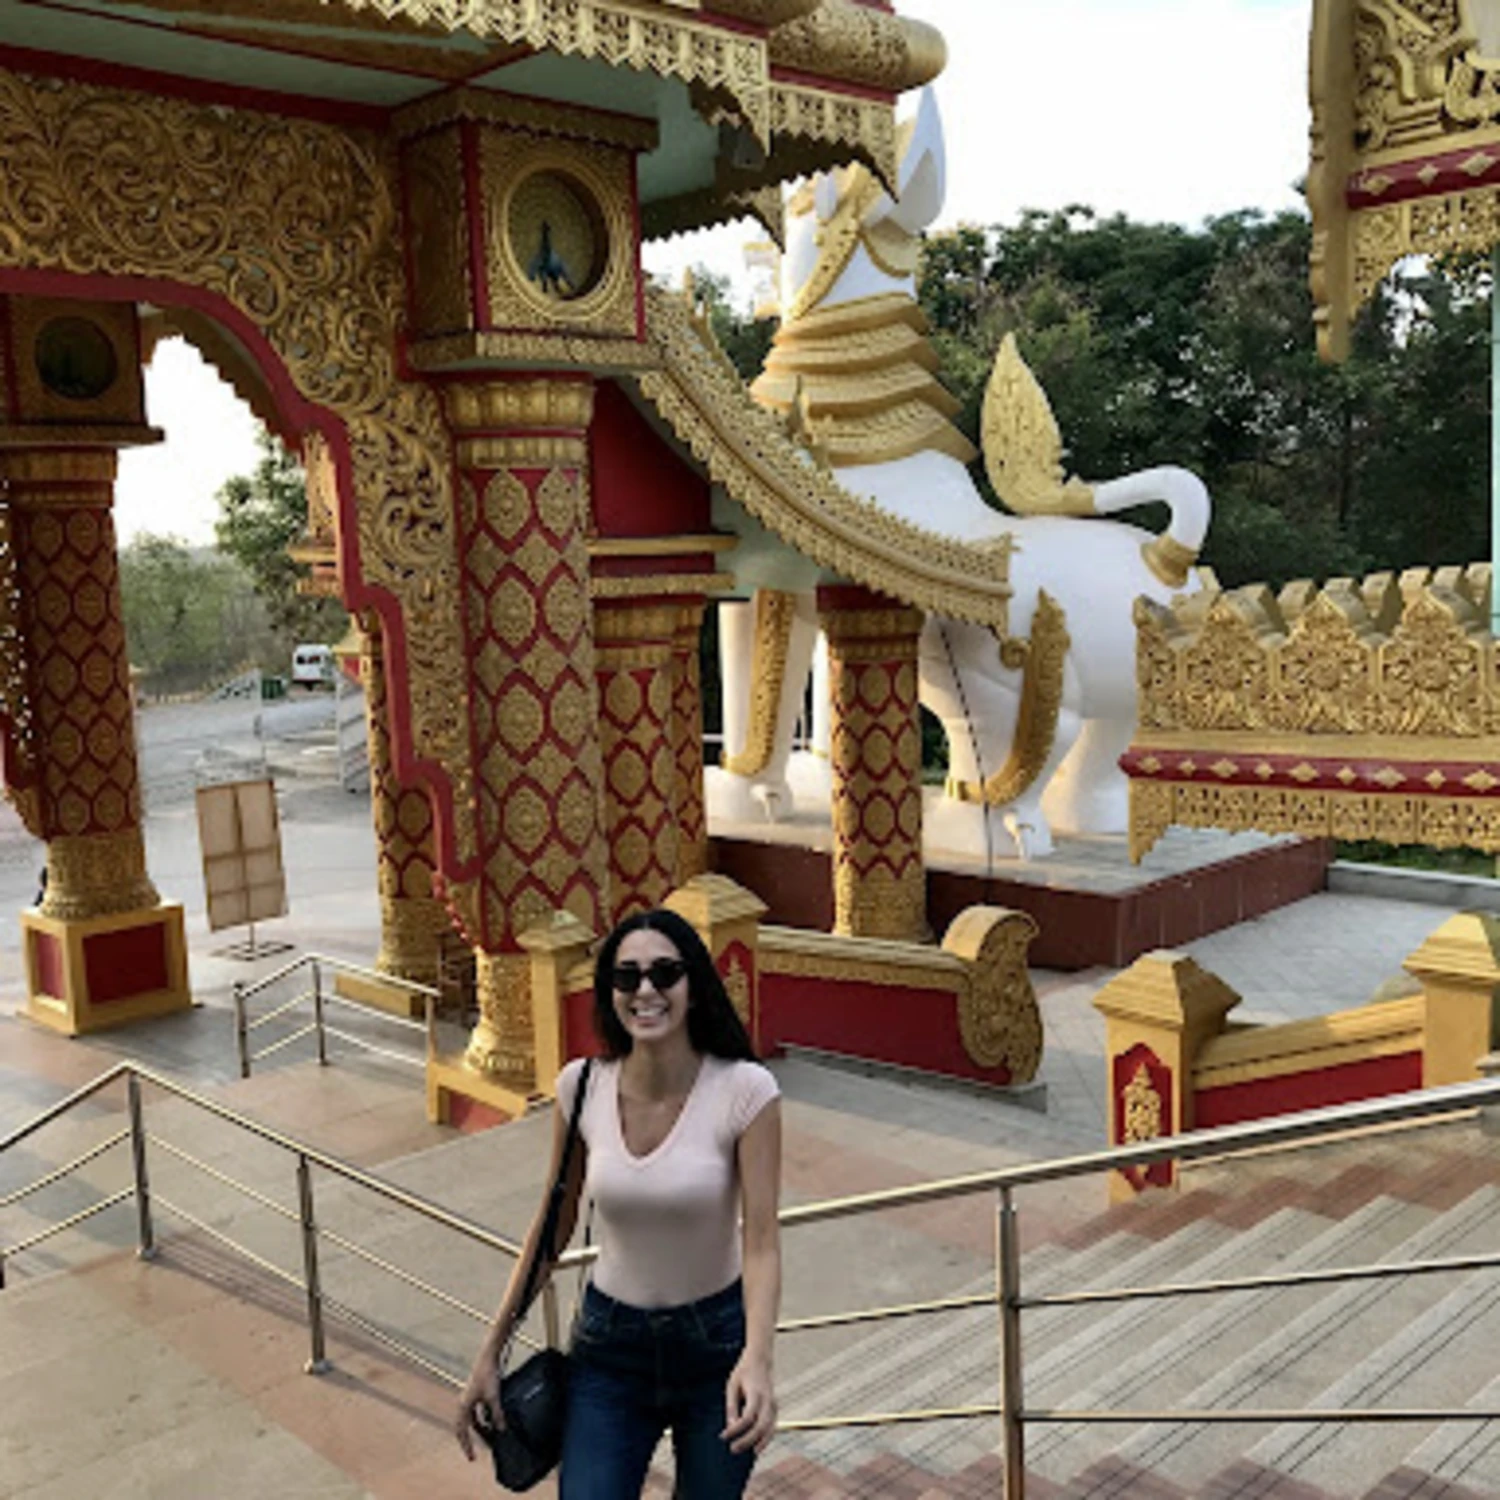 Girl in temple in Asia.